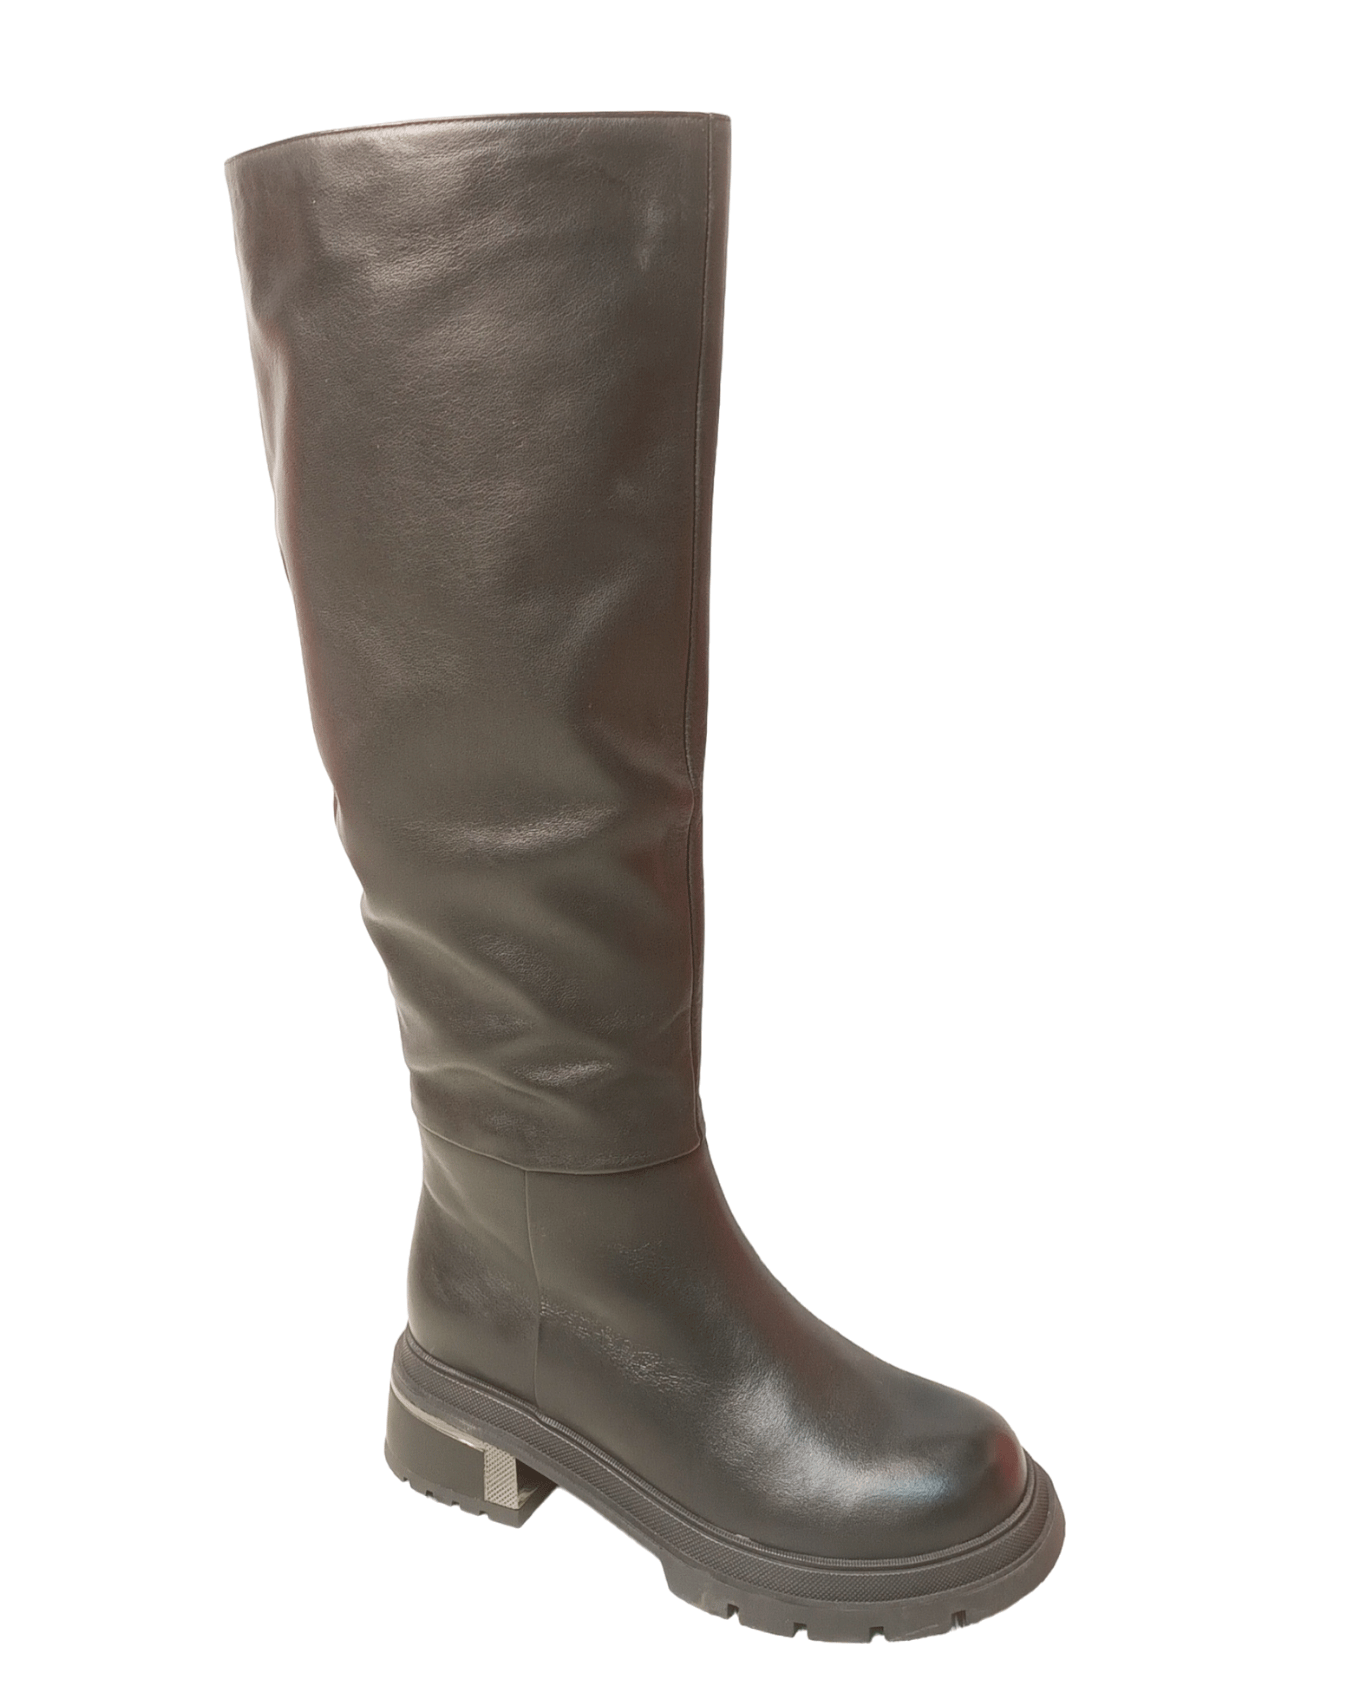 Сапоги высокие женские зимние кожаные черные Z232-12